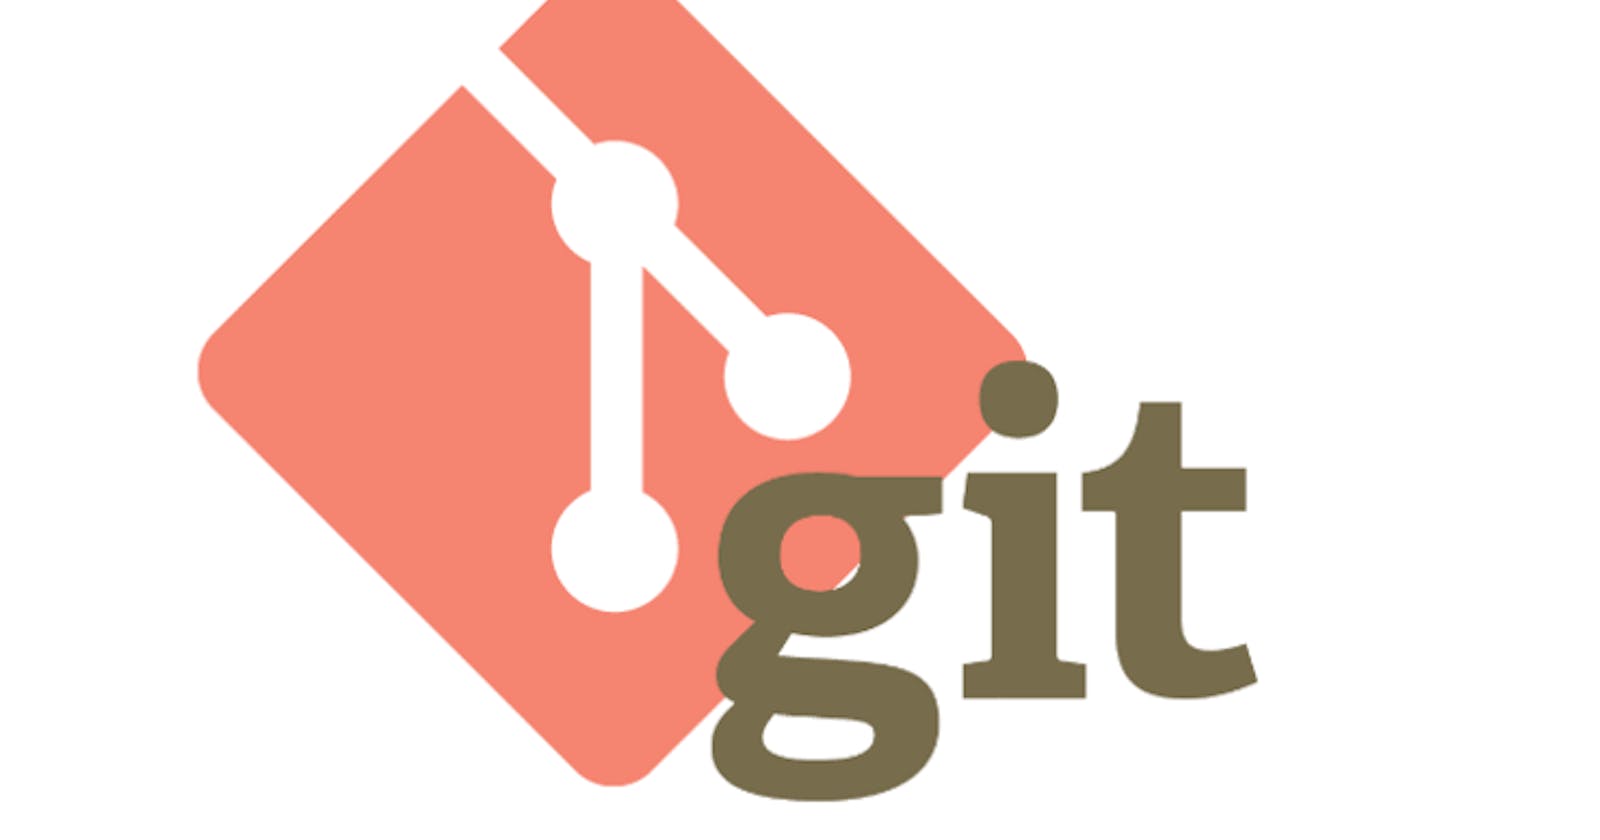 Explaining Git Concepts